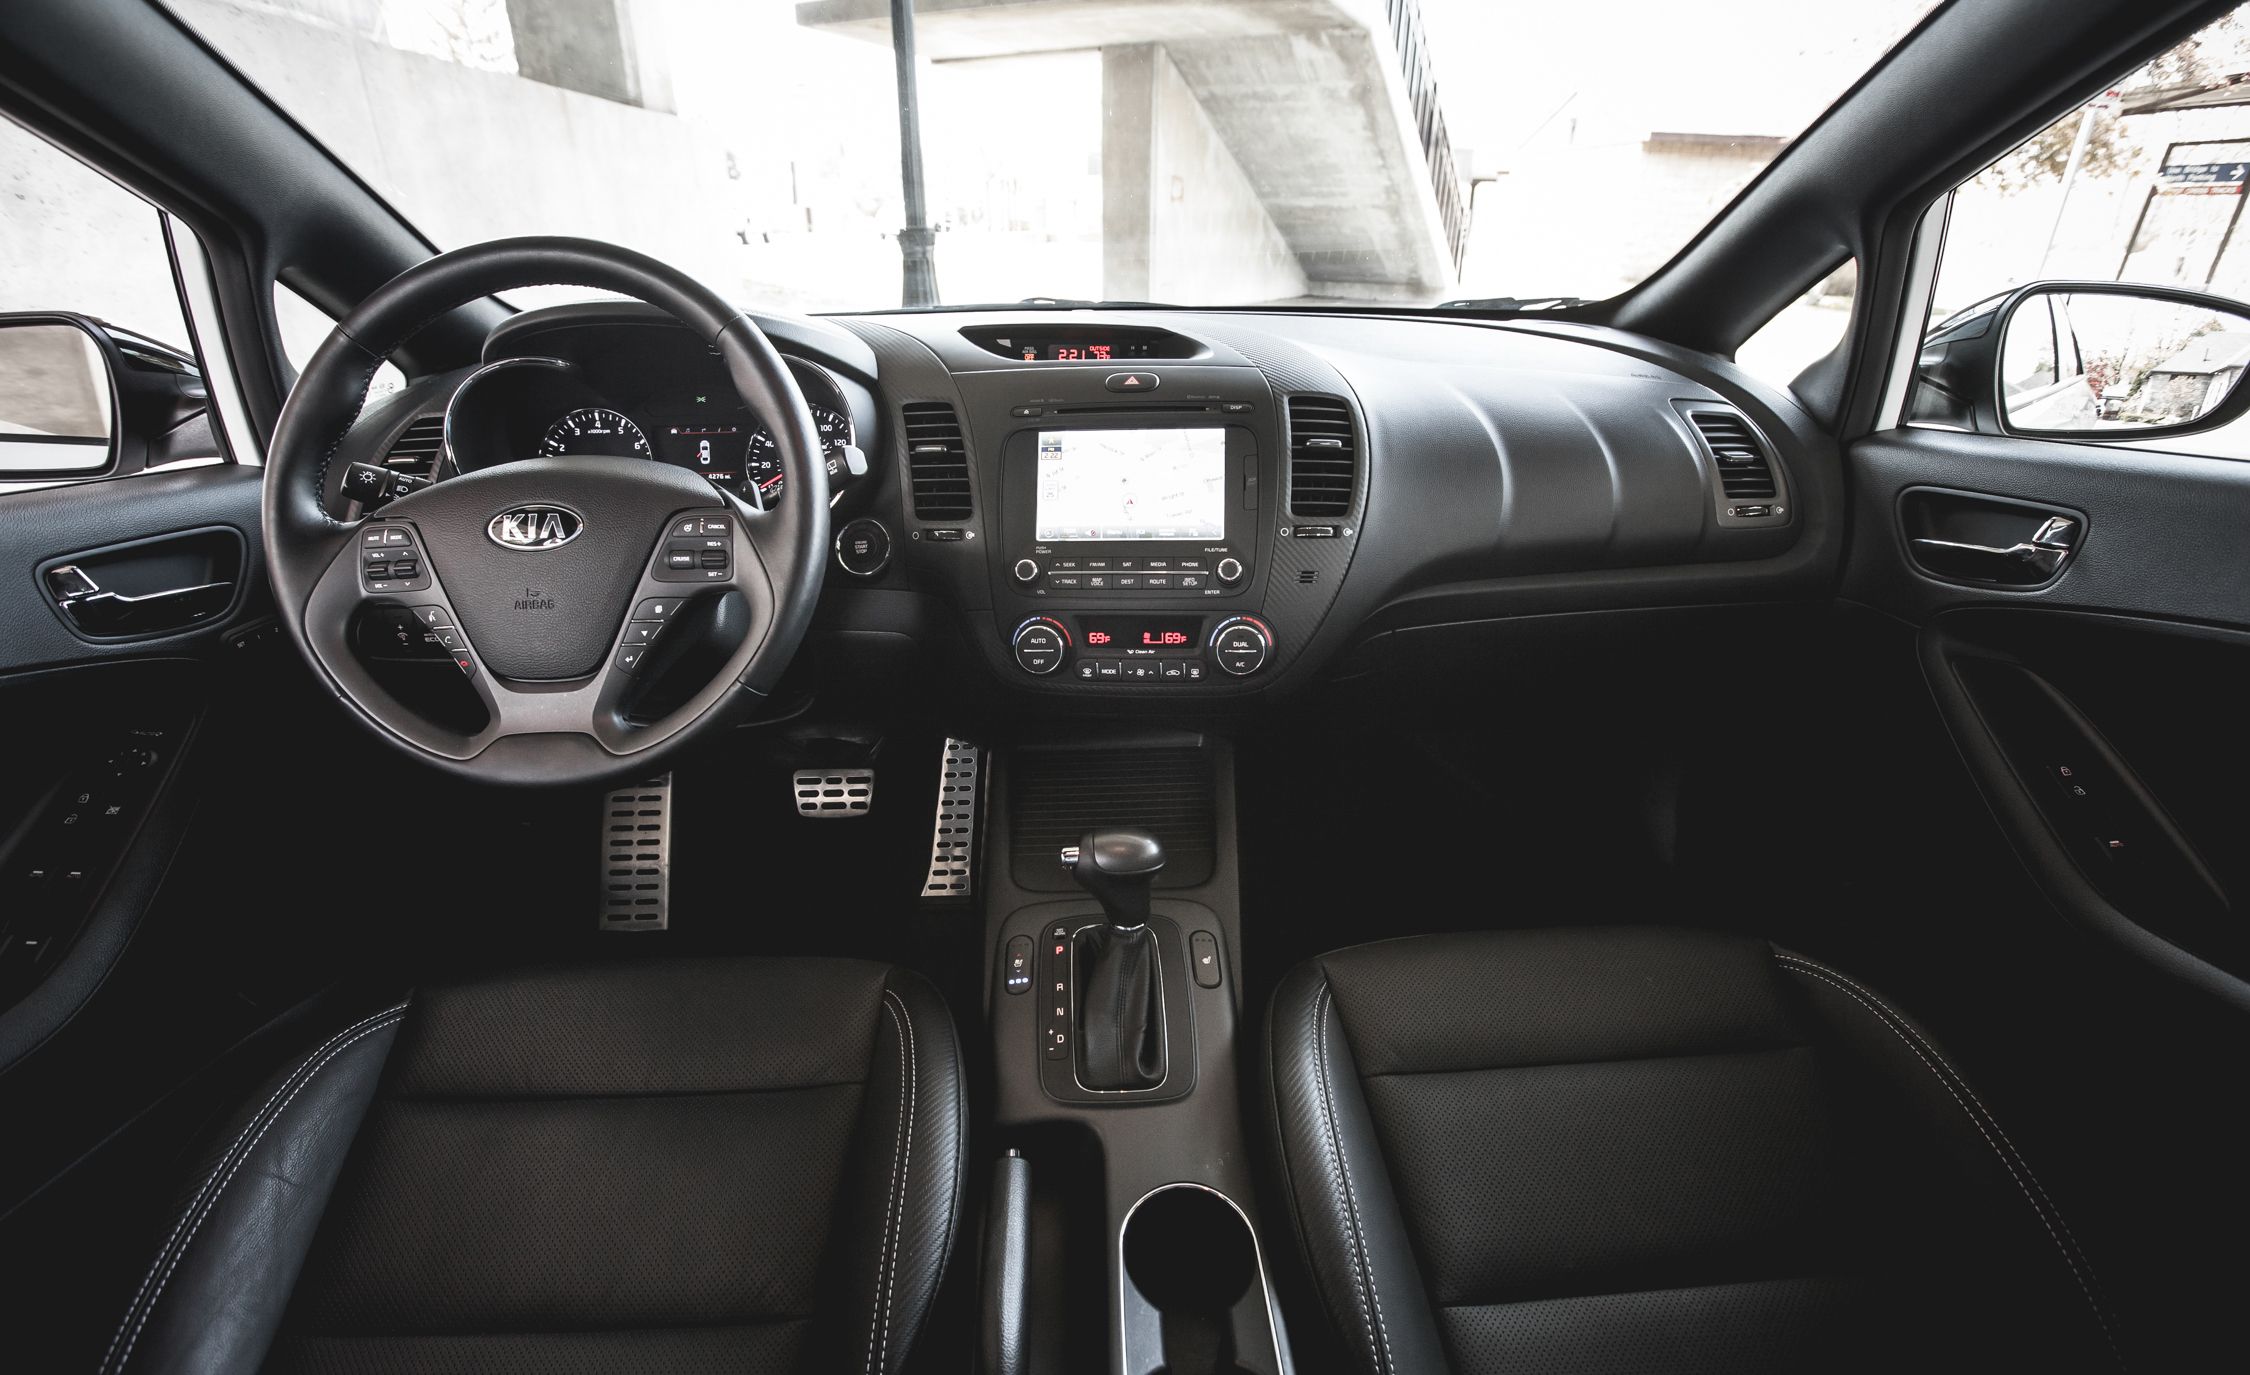 2014 Kia Forte5 SX Turbo Interior (View 15 of 26)